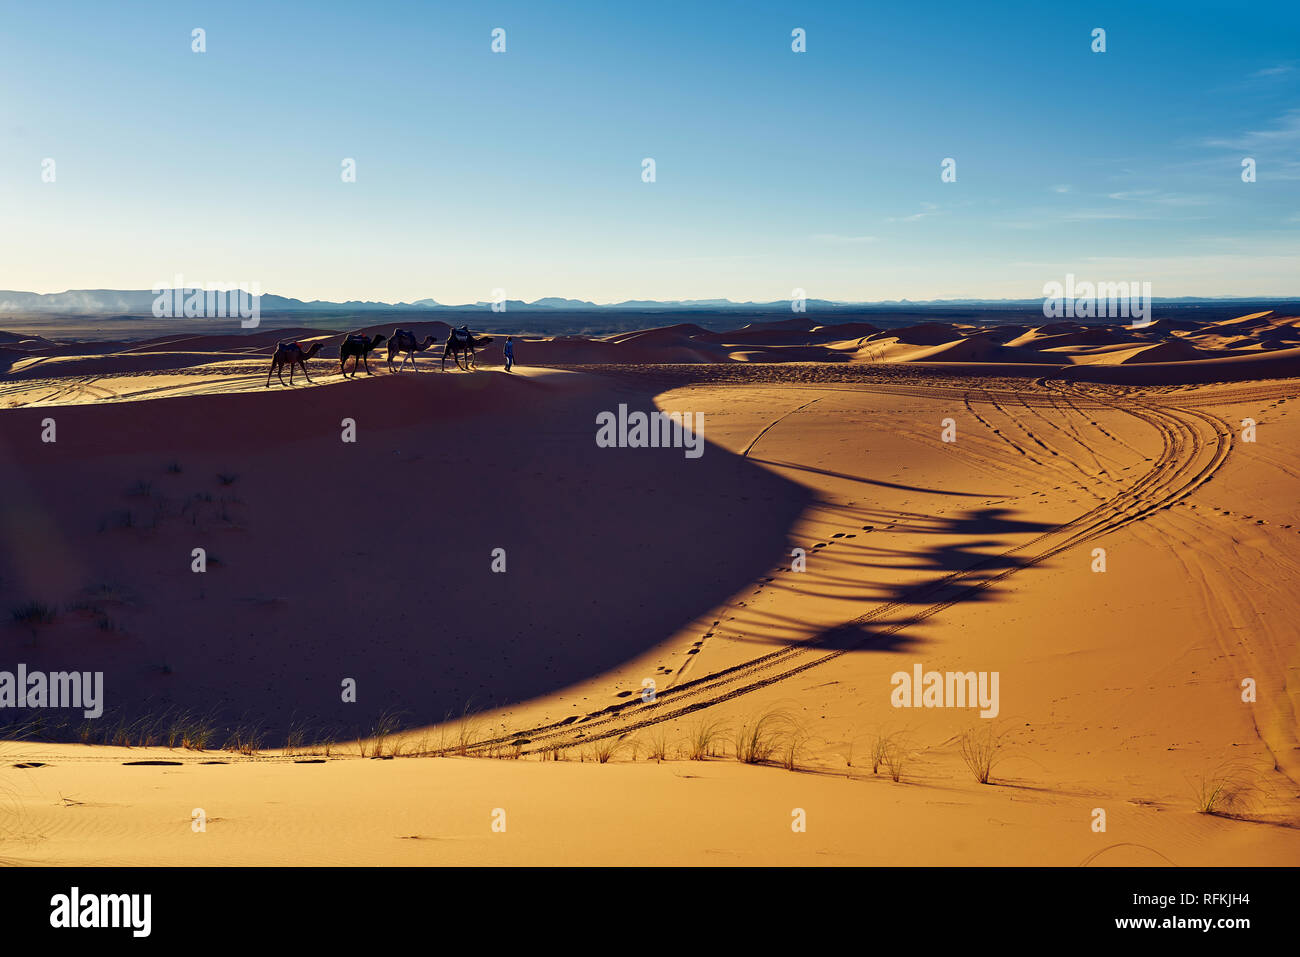 Camel caravan and shadows in desert Erg Chebbi, near town Merzouga, Sahara Desert, Morocco Stock Photo